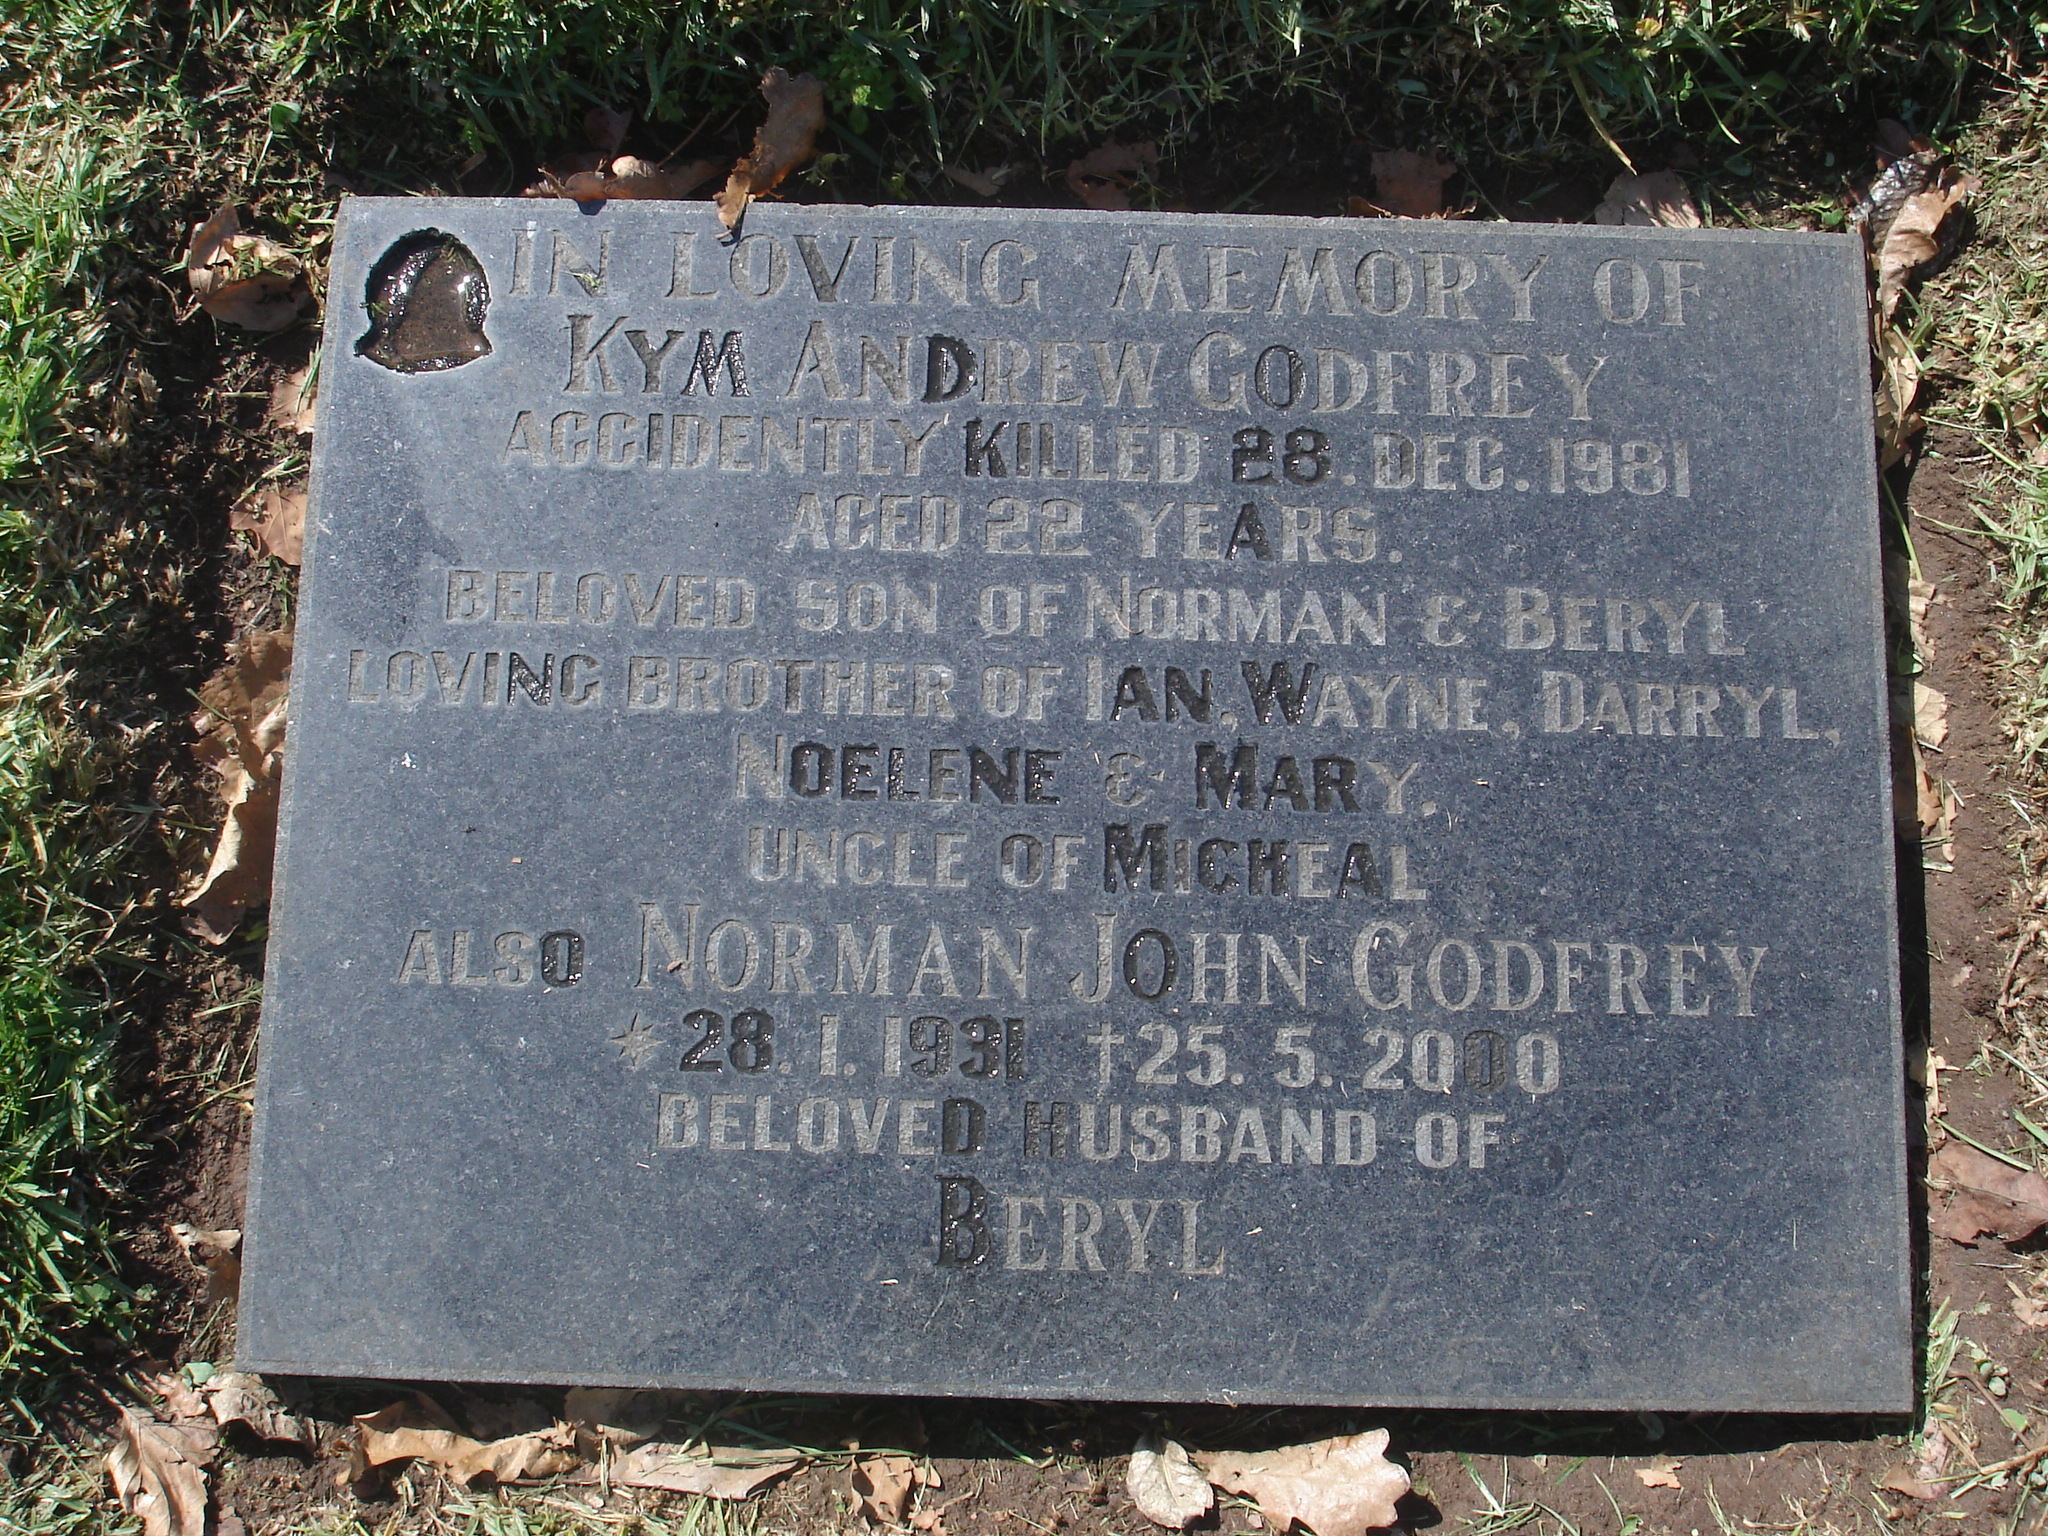 Kym Andrew GODFREY - grave stone